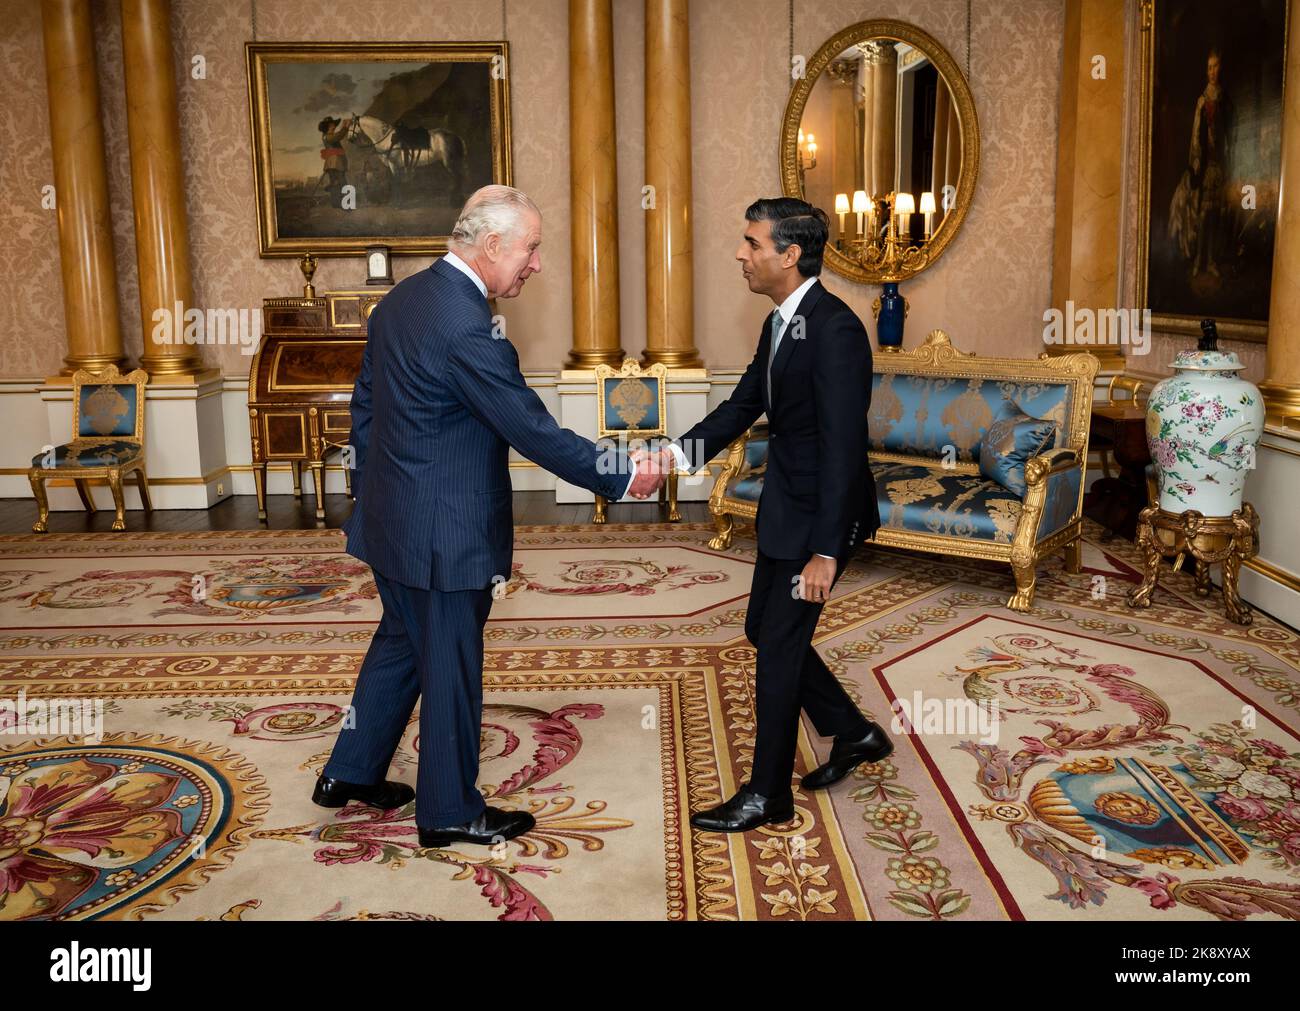 König Charles III. Begrüßt Rishi Sunak bei einer Audienz im Buckingham Palace, London, wo er den neu gewählten Vorsitzenden der Konservativen Partei einlud, Premierminister zu werden und eine neue Regierung zu bilden. Bilddatum: Dienstag, 25. Oktober 2022. Stockfoto